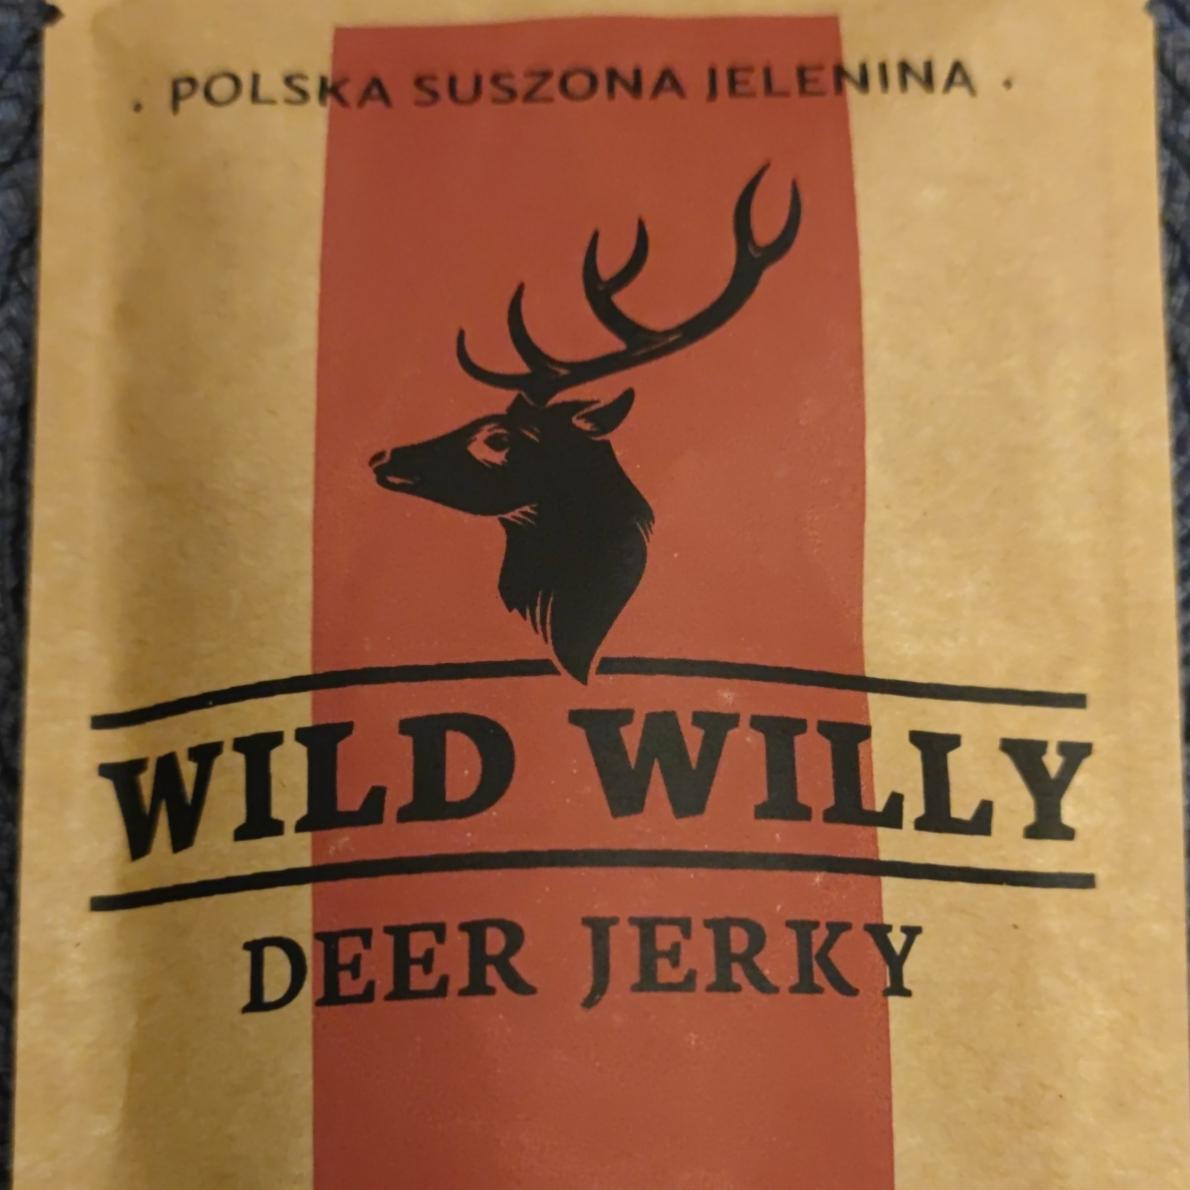 Zdjęcia - Polska suszona jelenina wild willy